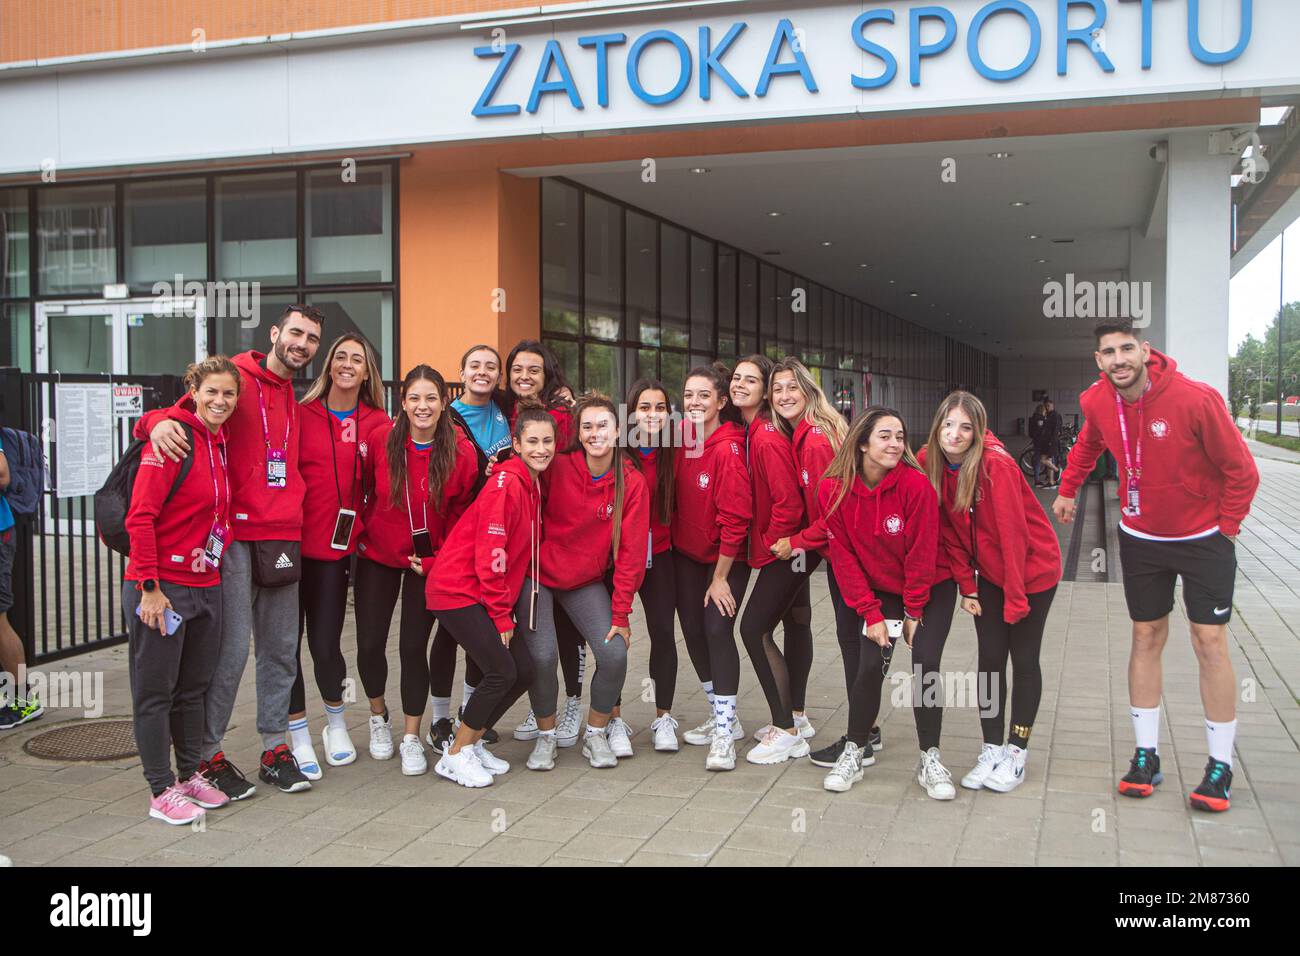 Portogallo università membri della squadra sportiva a Sports Bay (Zatoka sporty) a Lodz PolitechUniversity, Polonia, Jul22 durante i Giochi europei di Sport UniversitySport Foto Stock